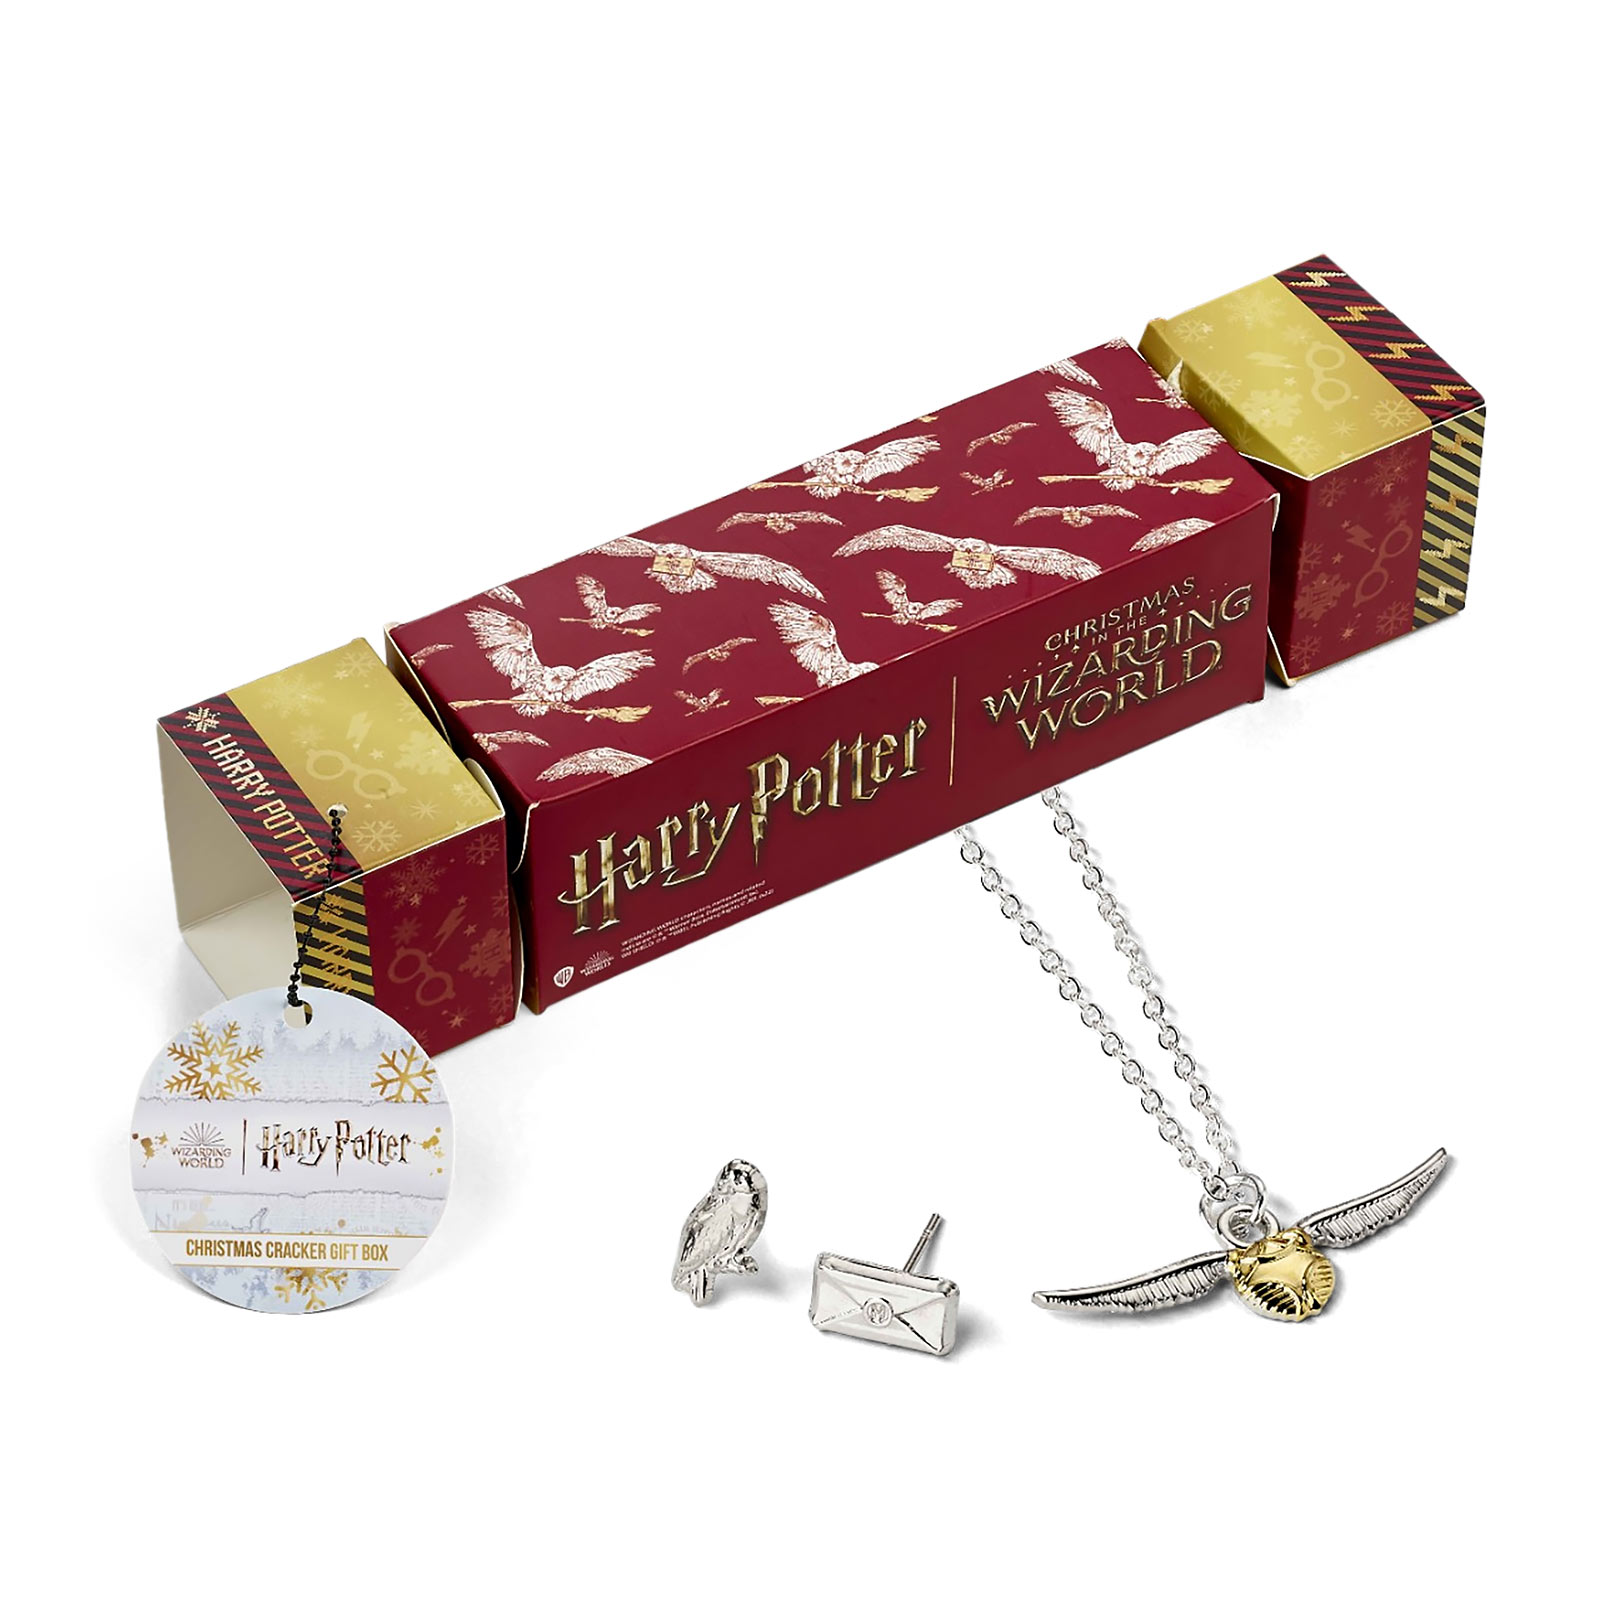 Hedwig Schmuckset in Geschenkbox - Harry Potter